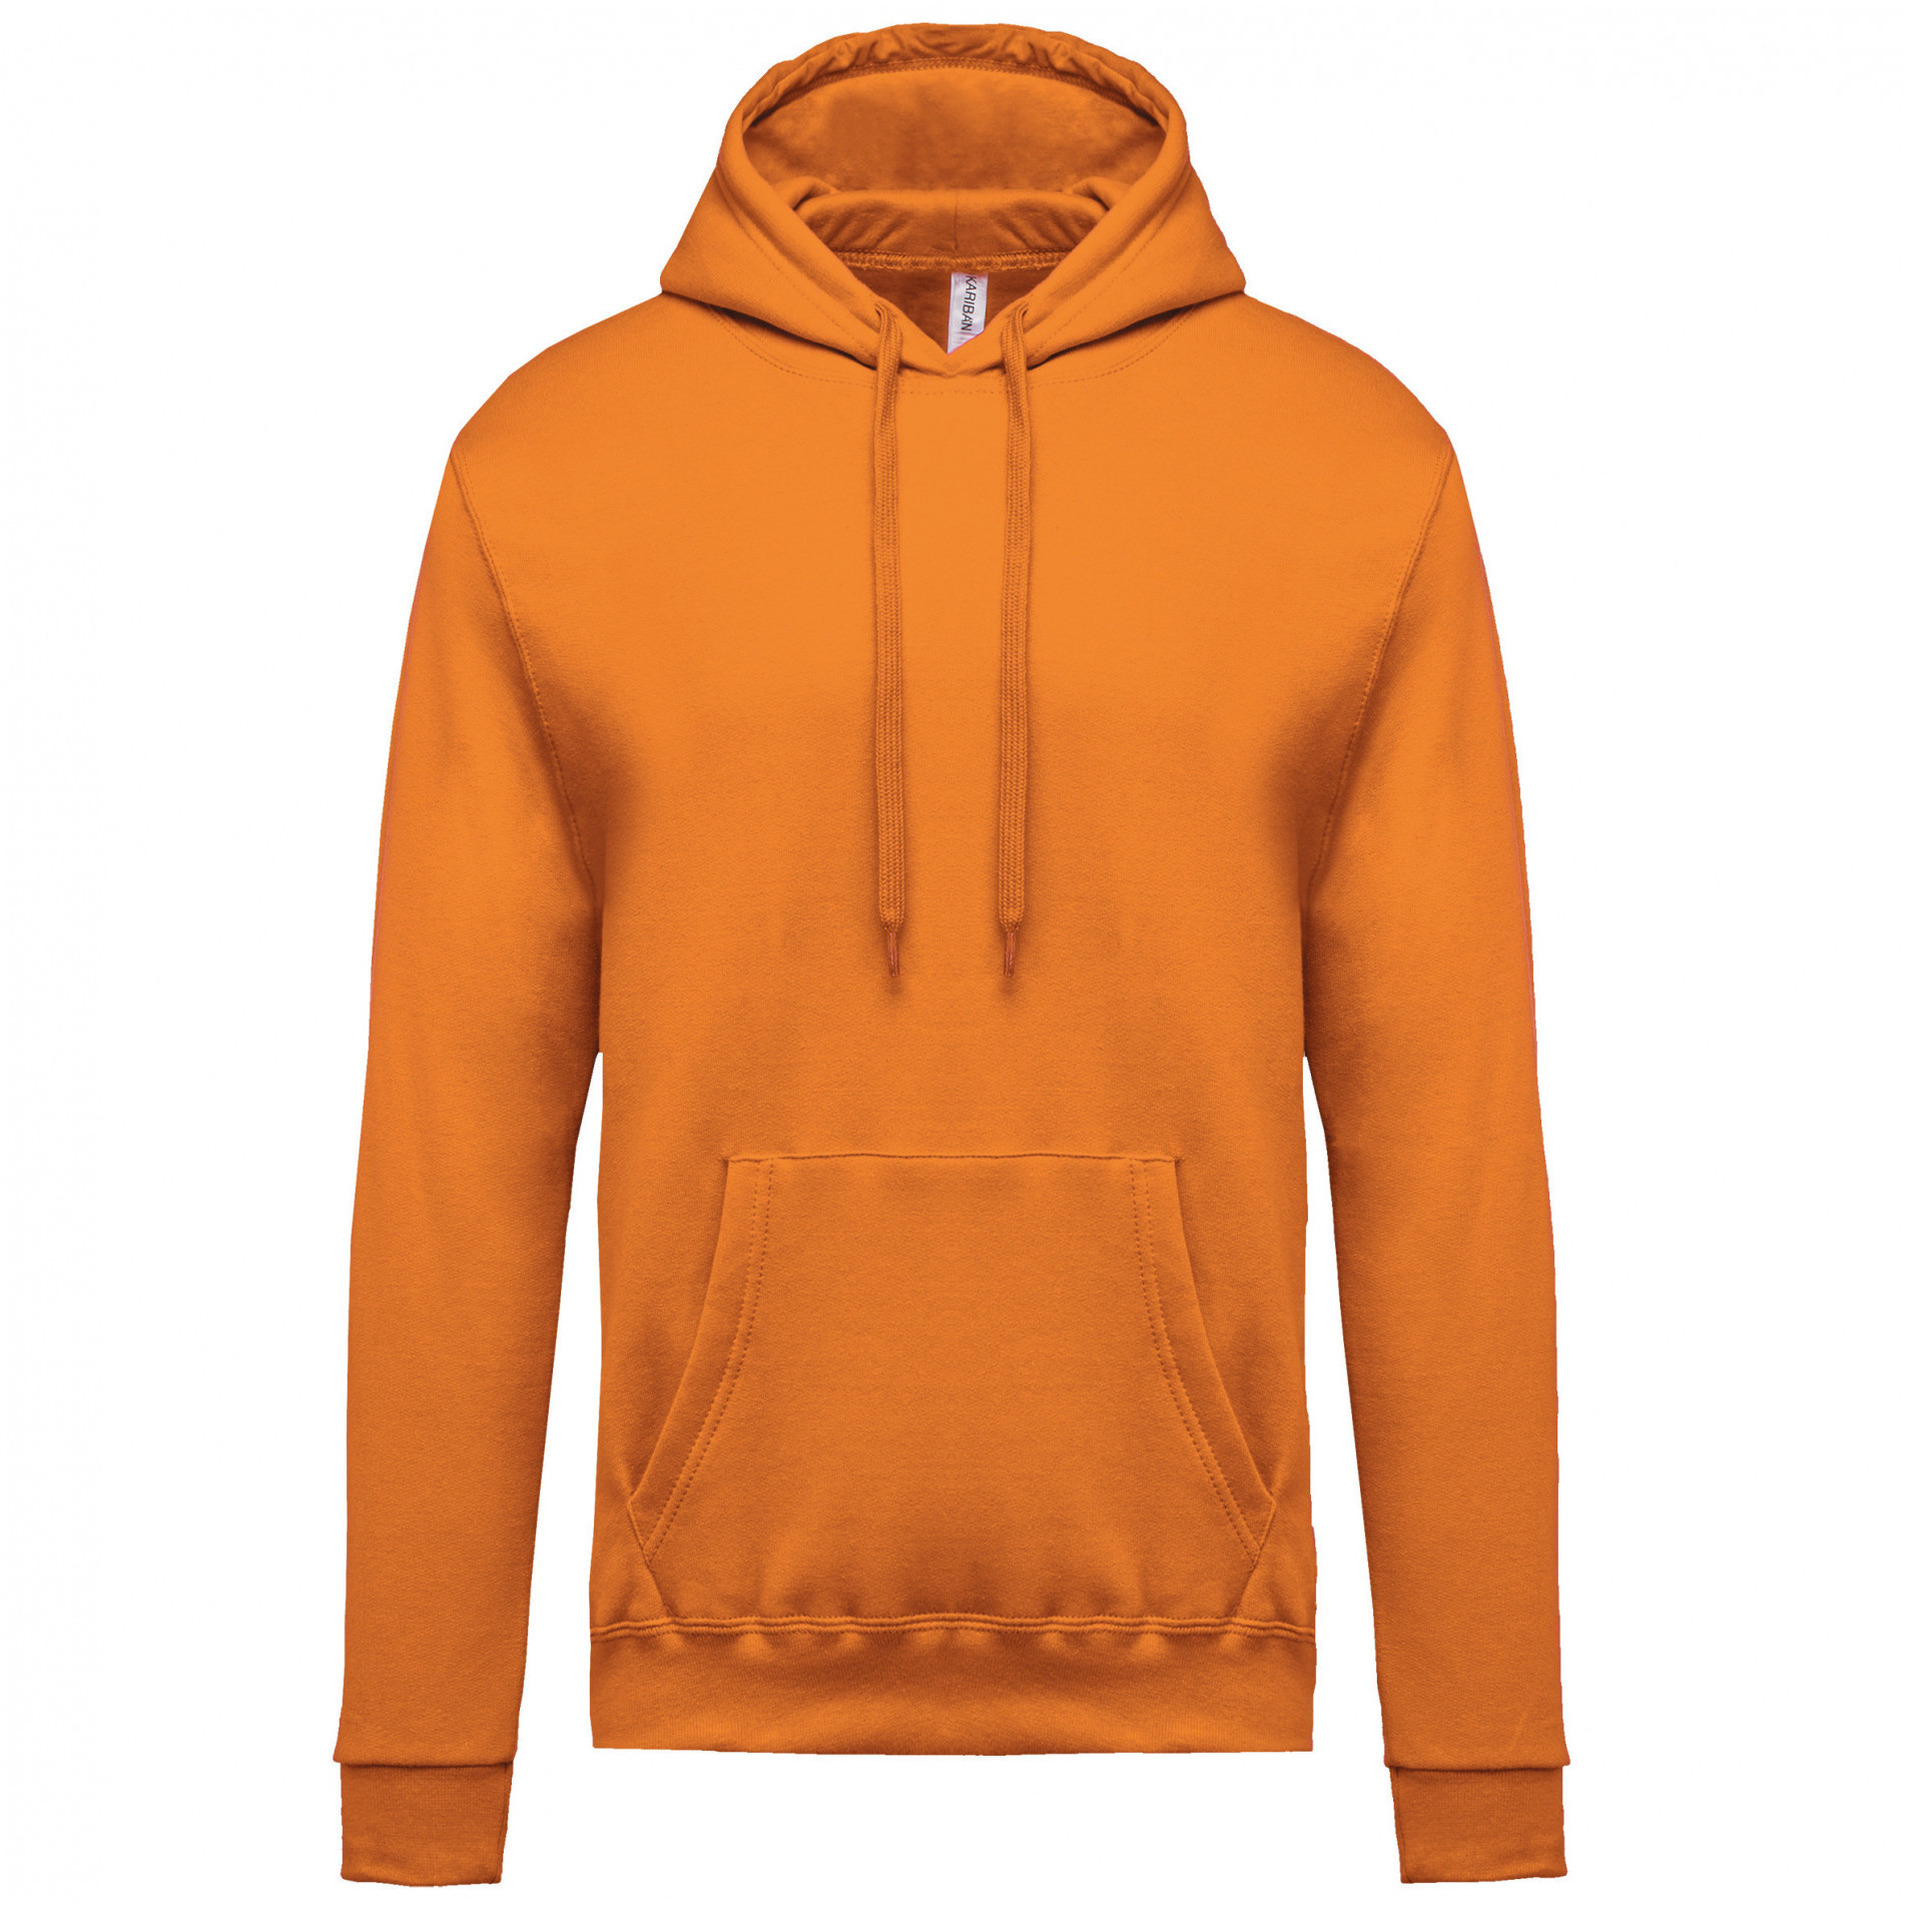 Oranje sweater/trui hoodie voor heren